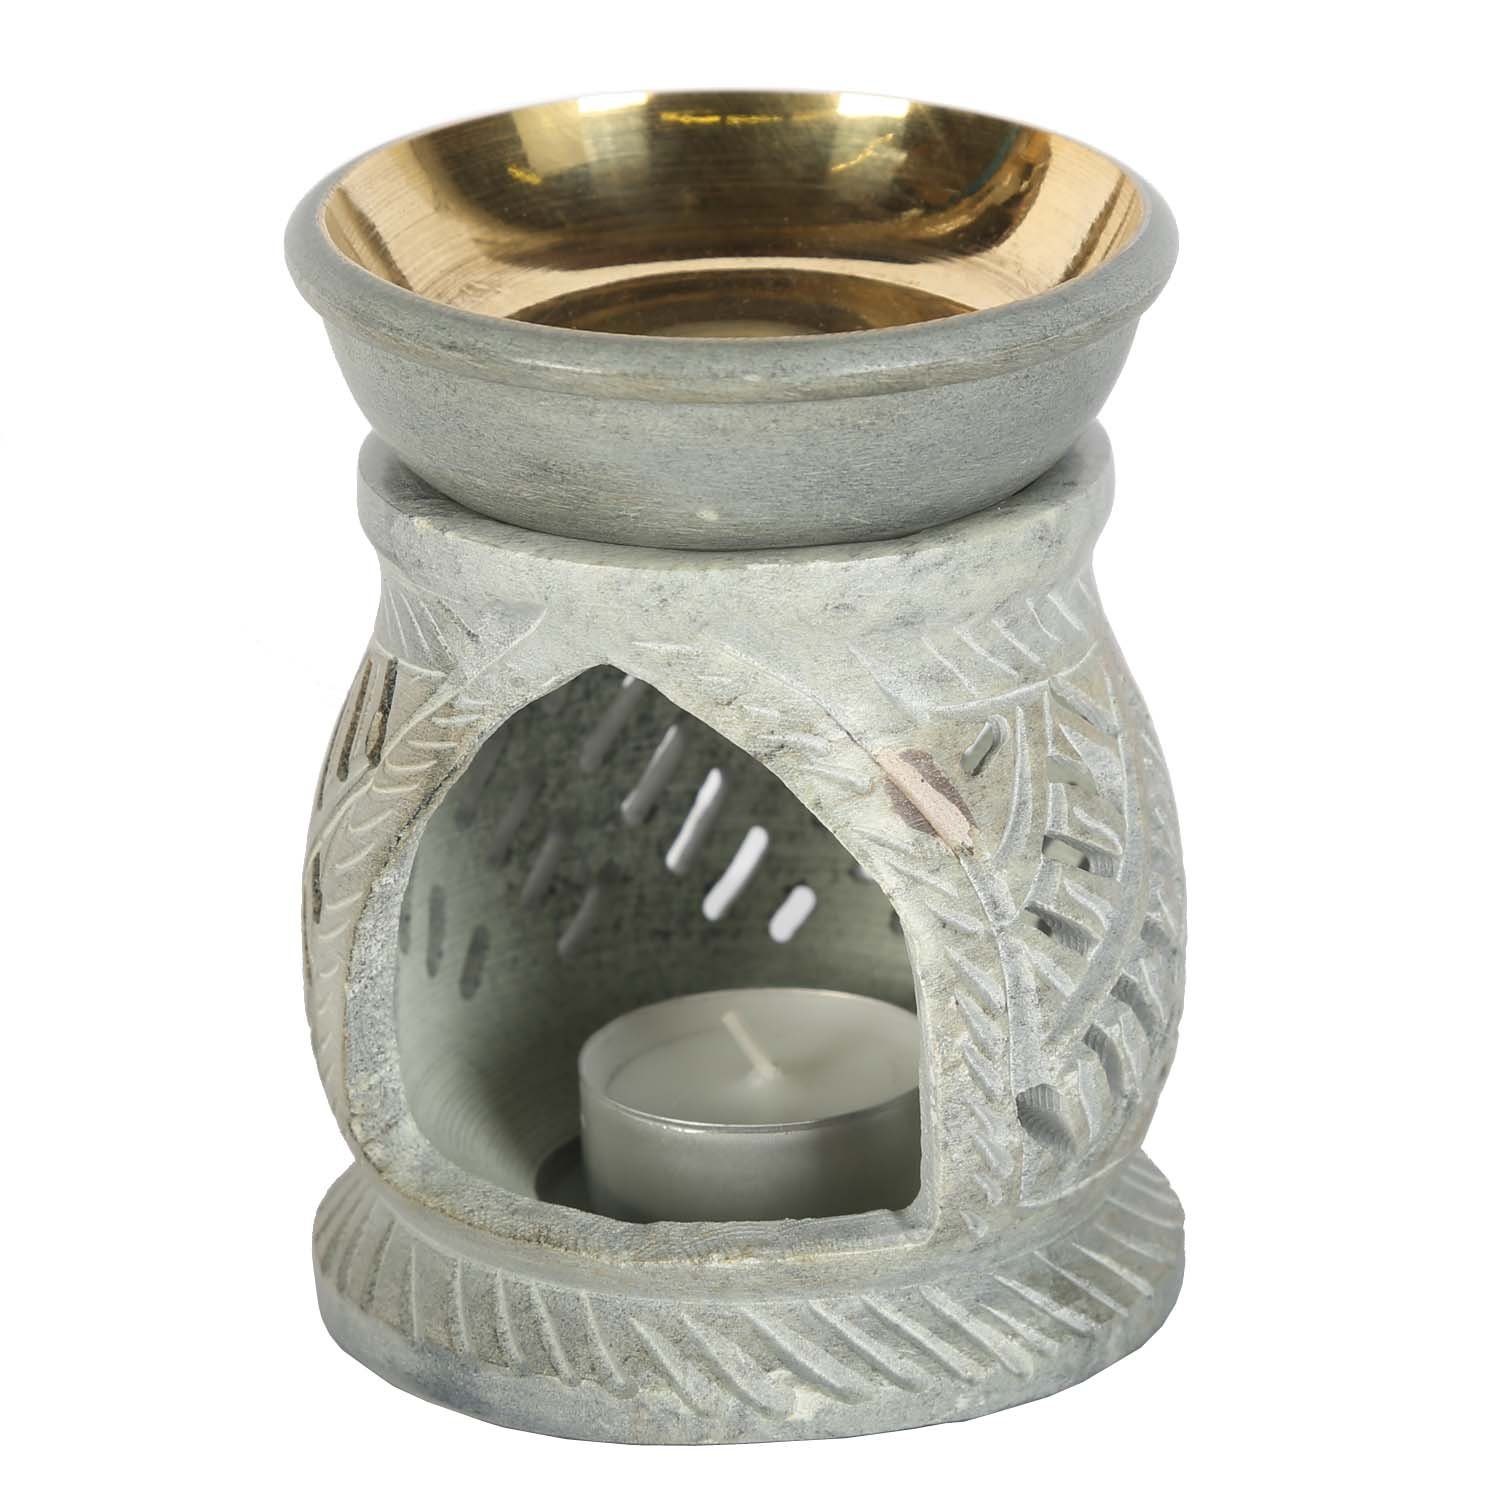 Diffusor Namaste Duftlampe Orientalische Moro Casa Soapstone Grün Teelicht, aus Duftlampe handgeschnitzt